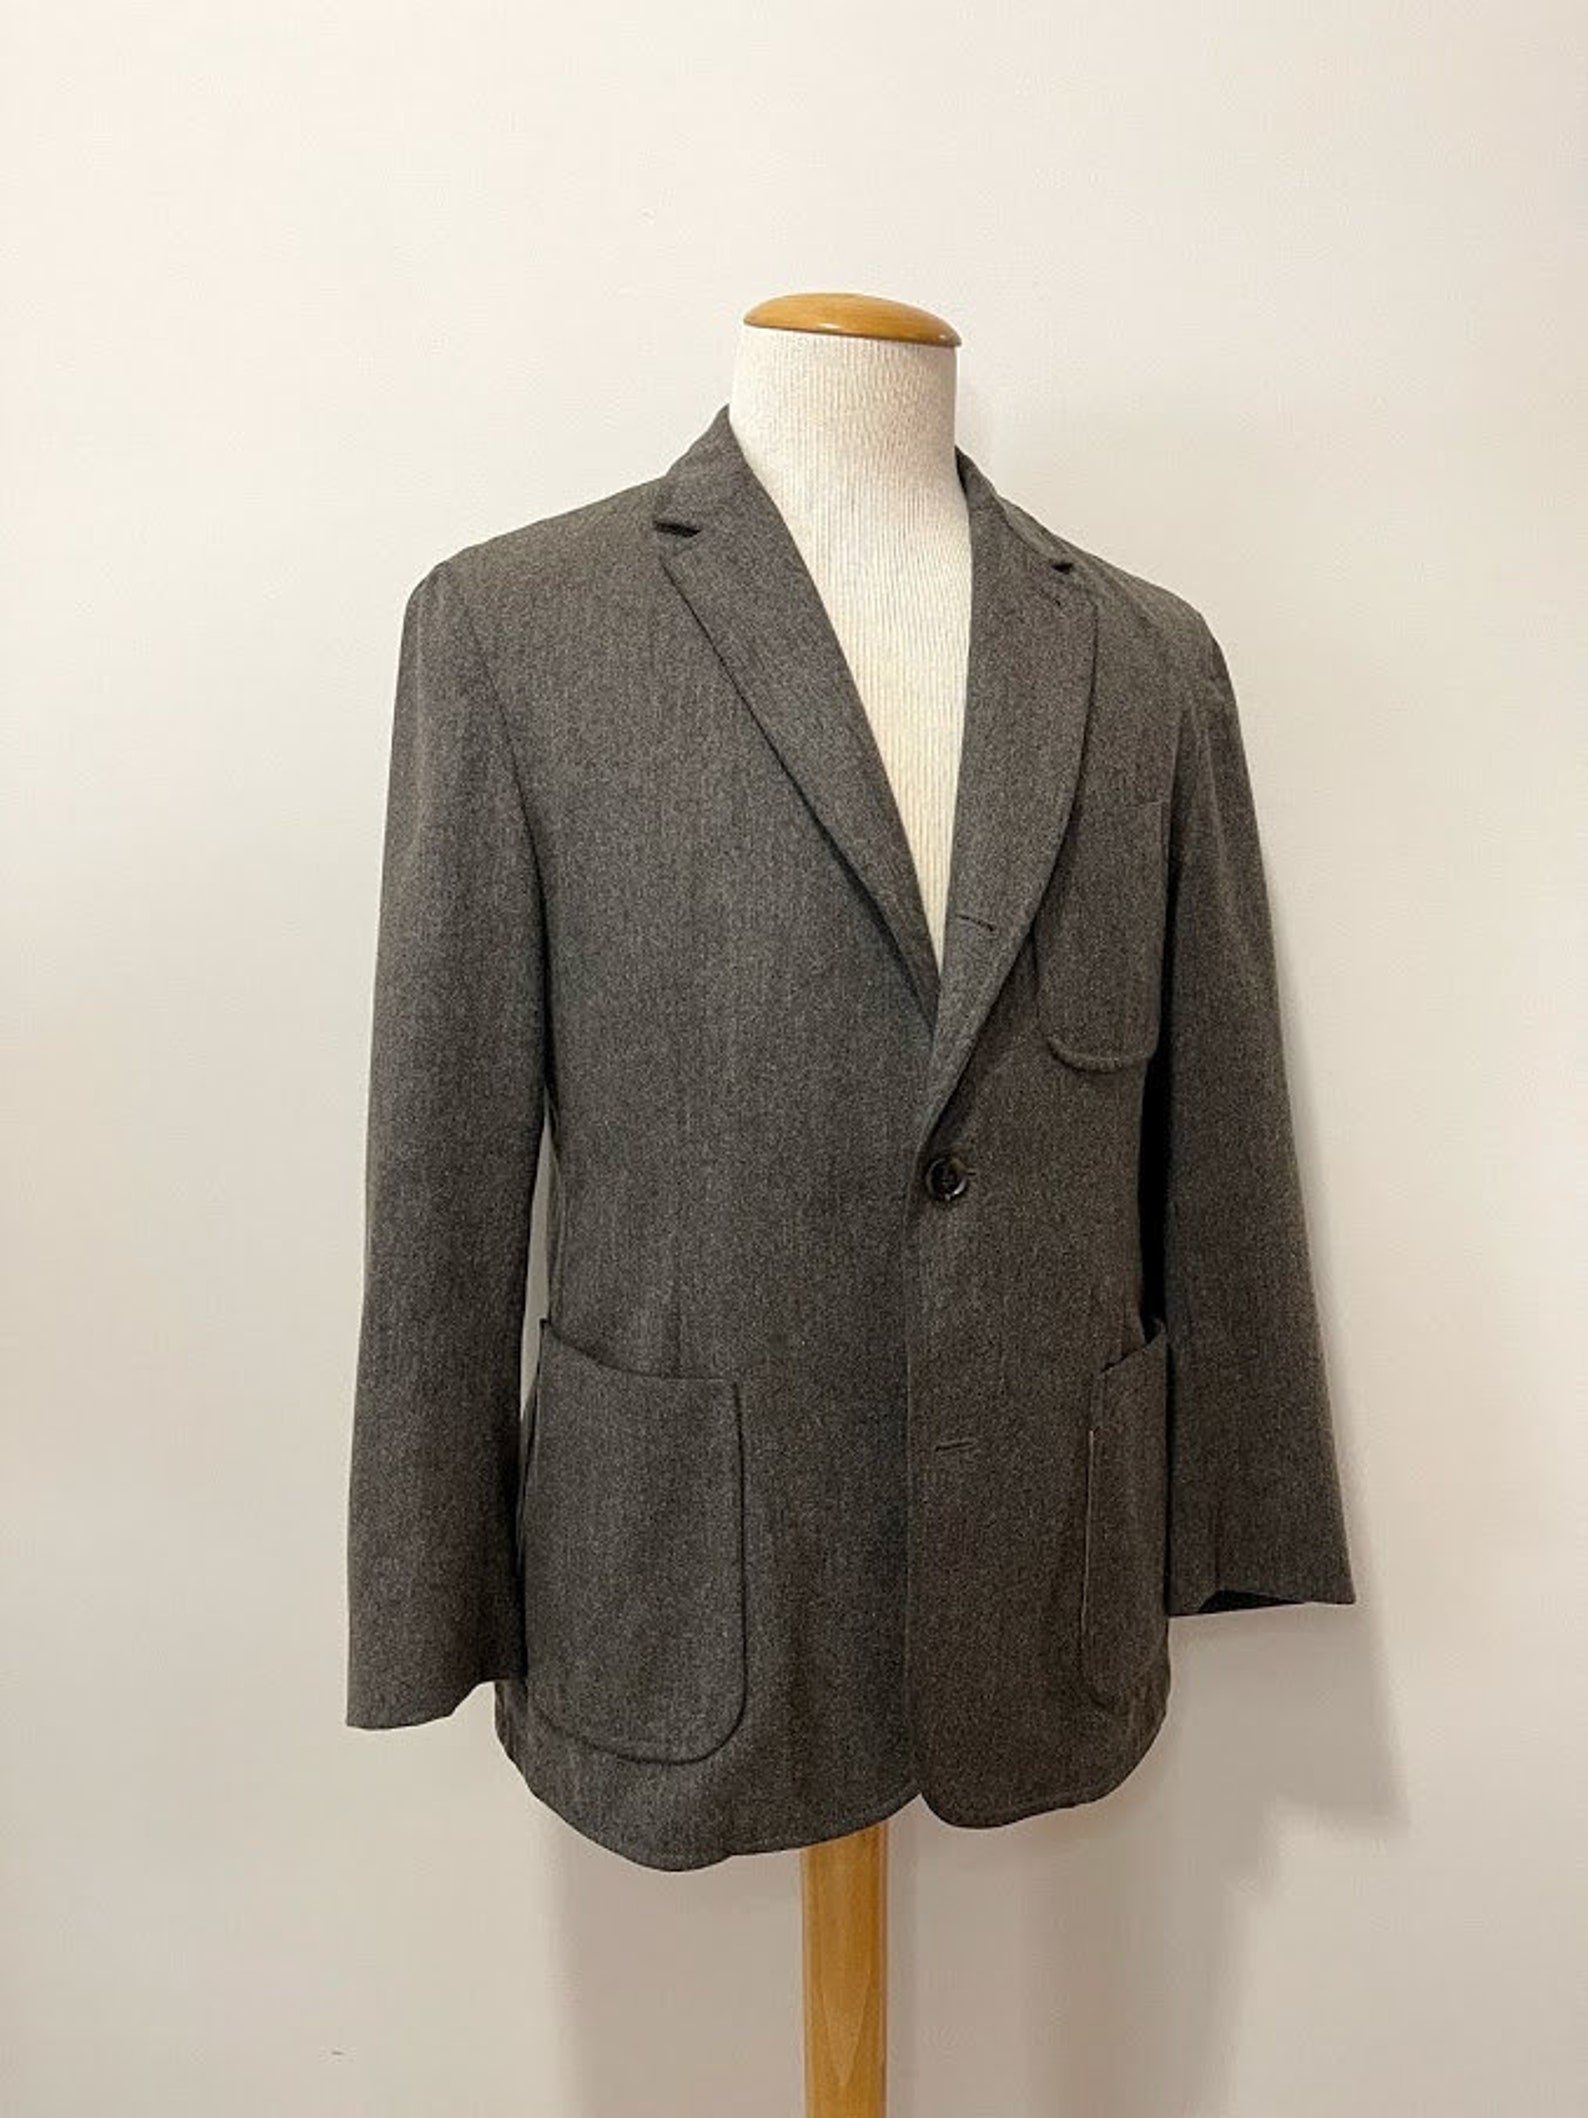 Vintage Men's Hugo Boss Wool Suit Jacket Vintage Hugo Boss | Etsy